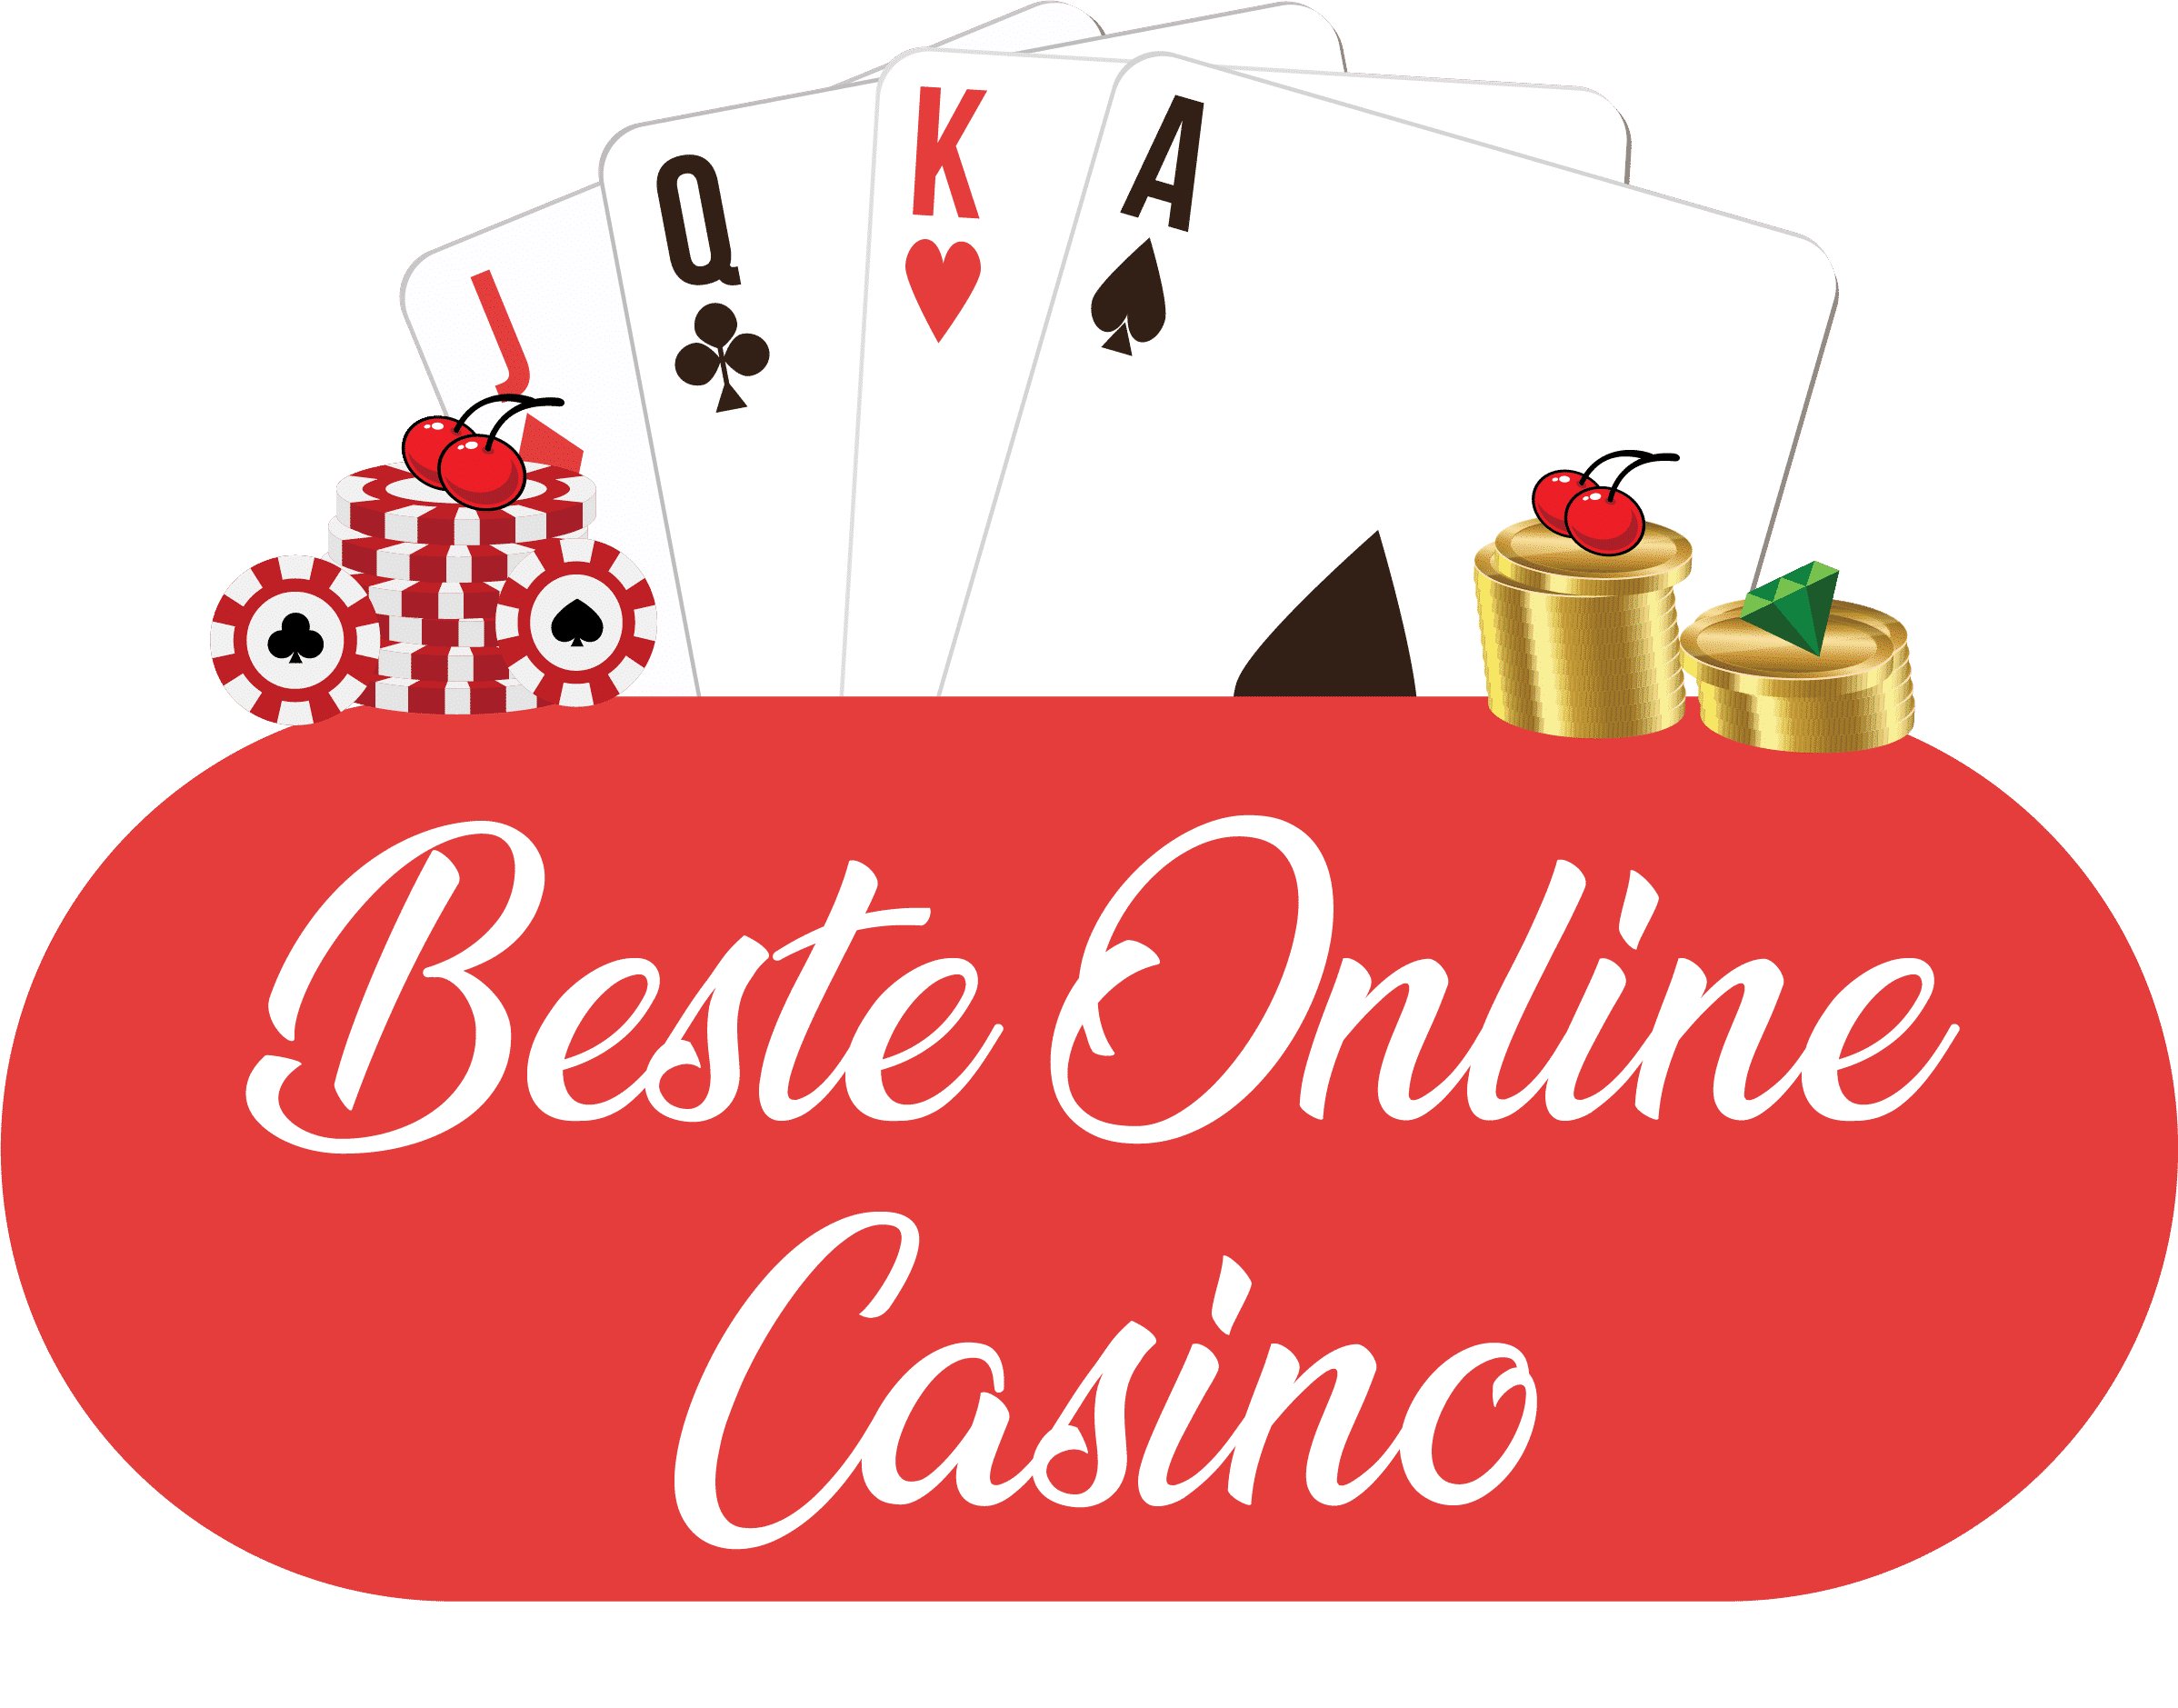 Der beste Weg zu die ganze wahrheit über online-casinos